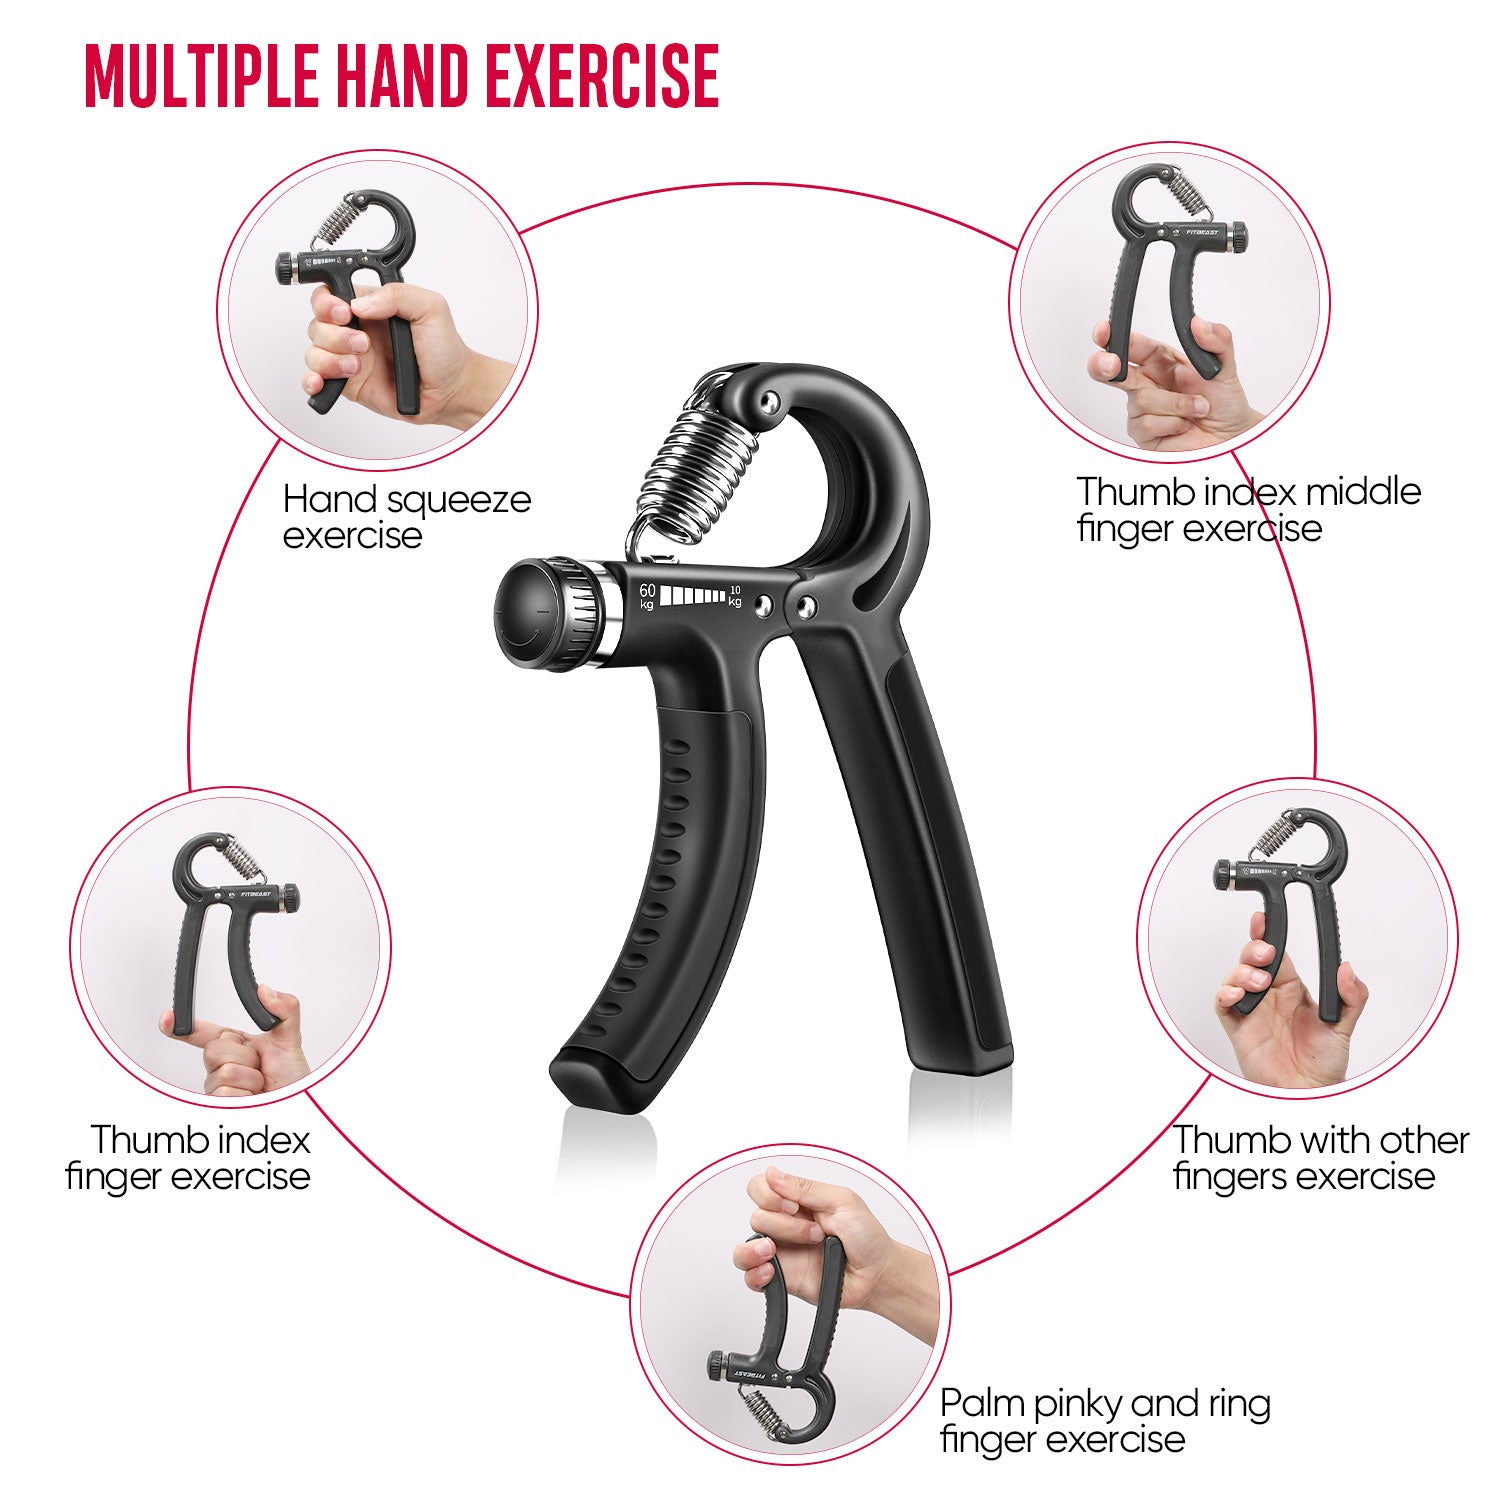 FitBeast Adjustable Hand Grip Strengthener Workout Kit (5 kg to 60 kg) -  Black